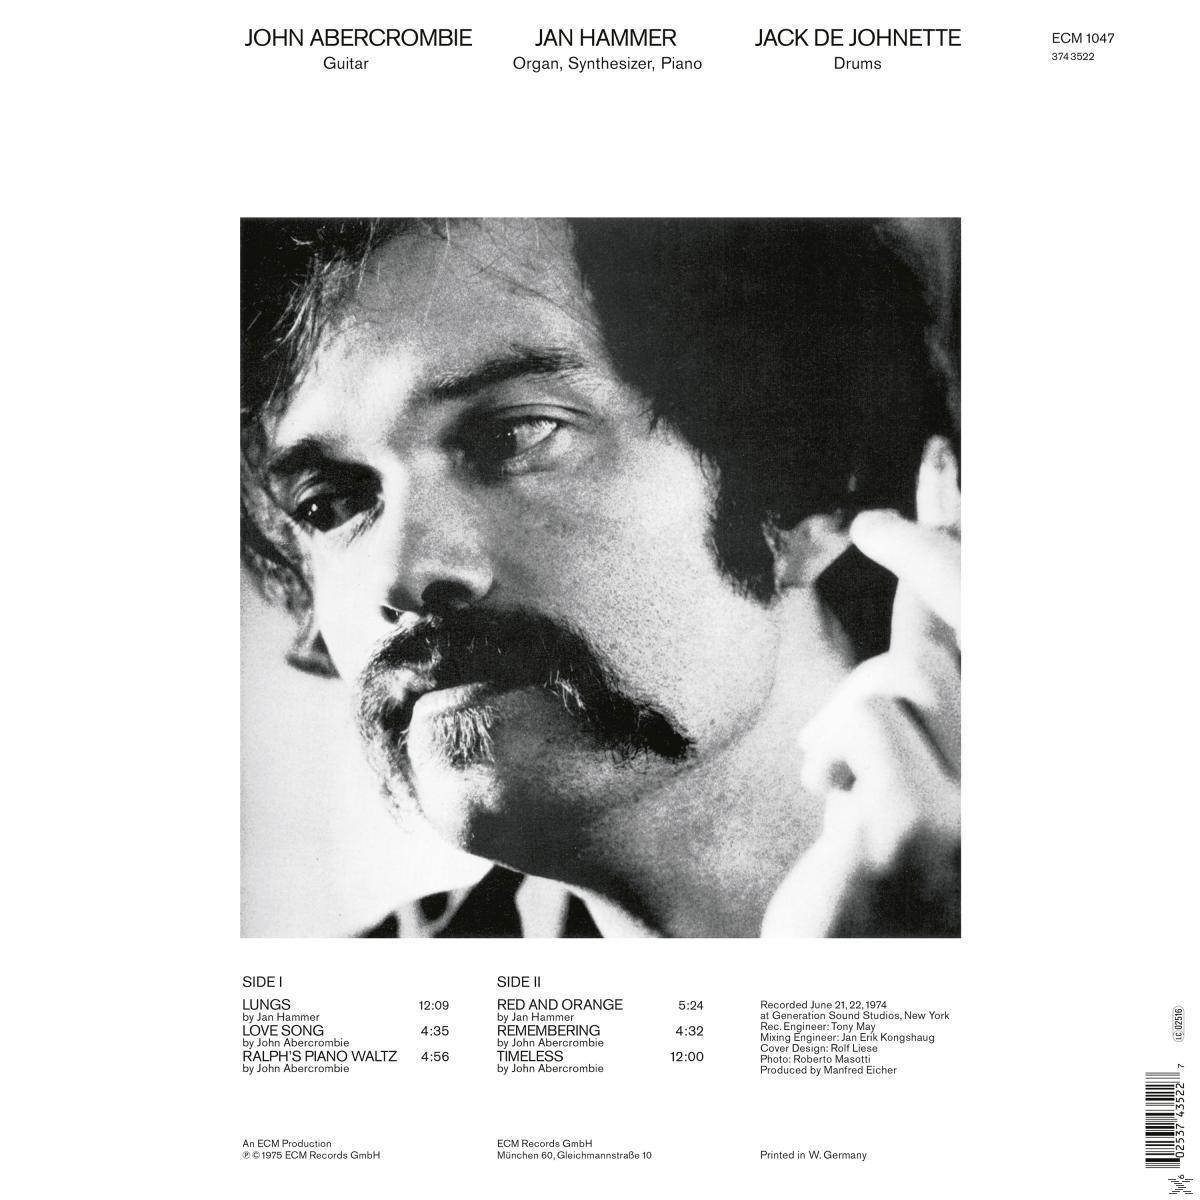 John Abercrombie - Timeless - (Vinyl)